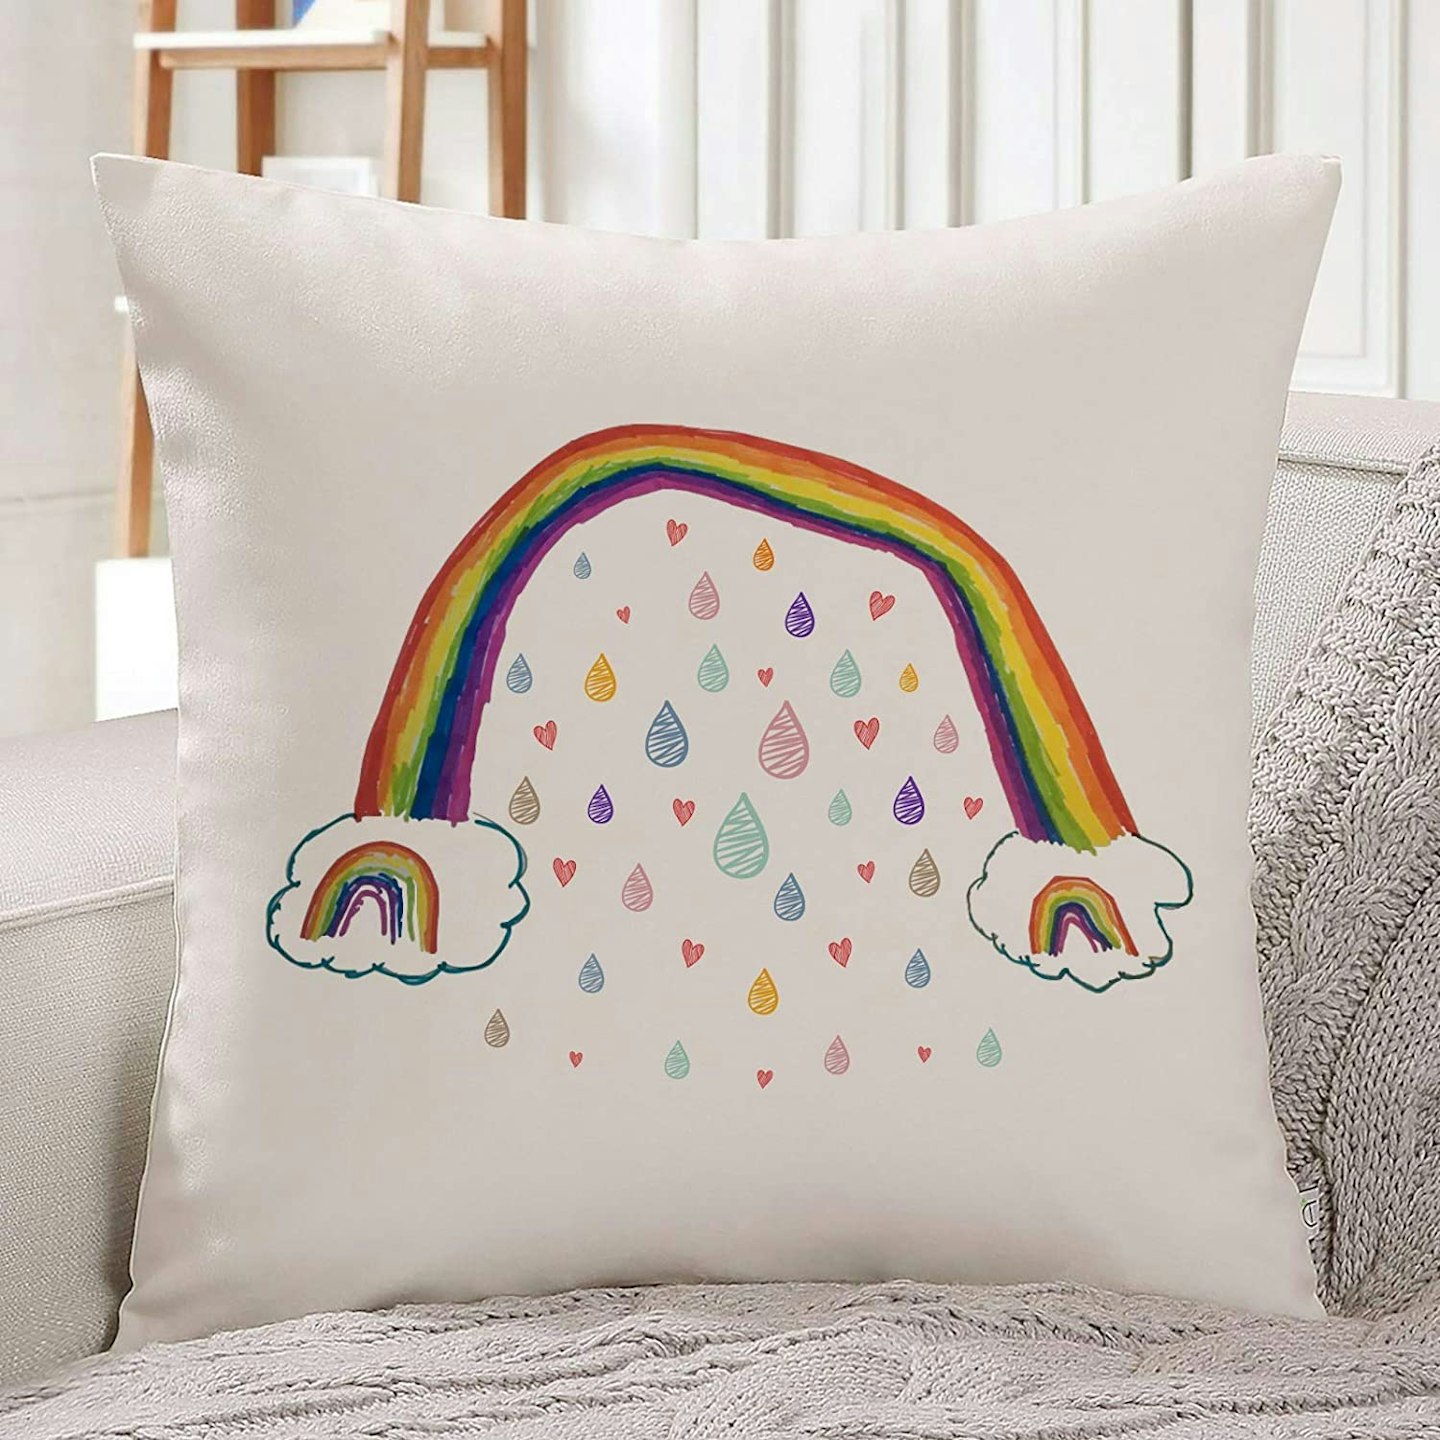 Rainbow Cushion Cover